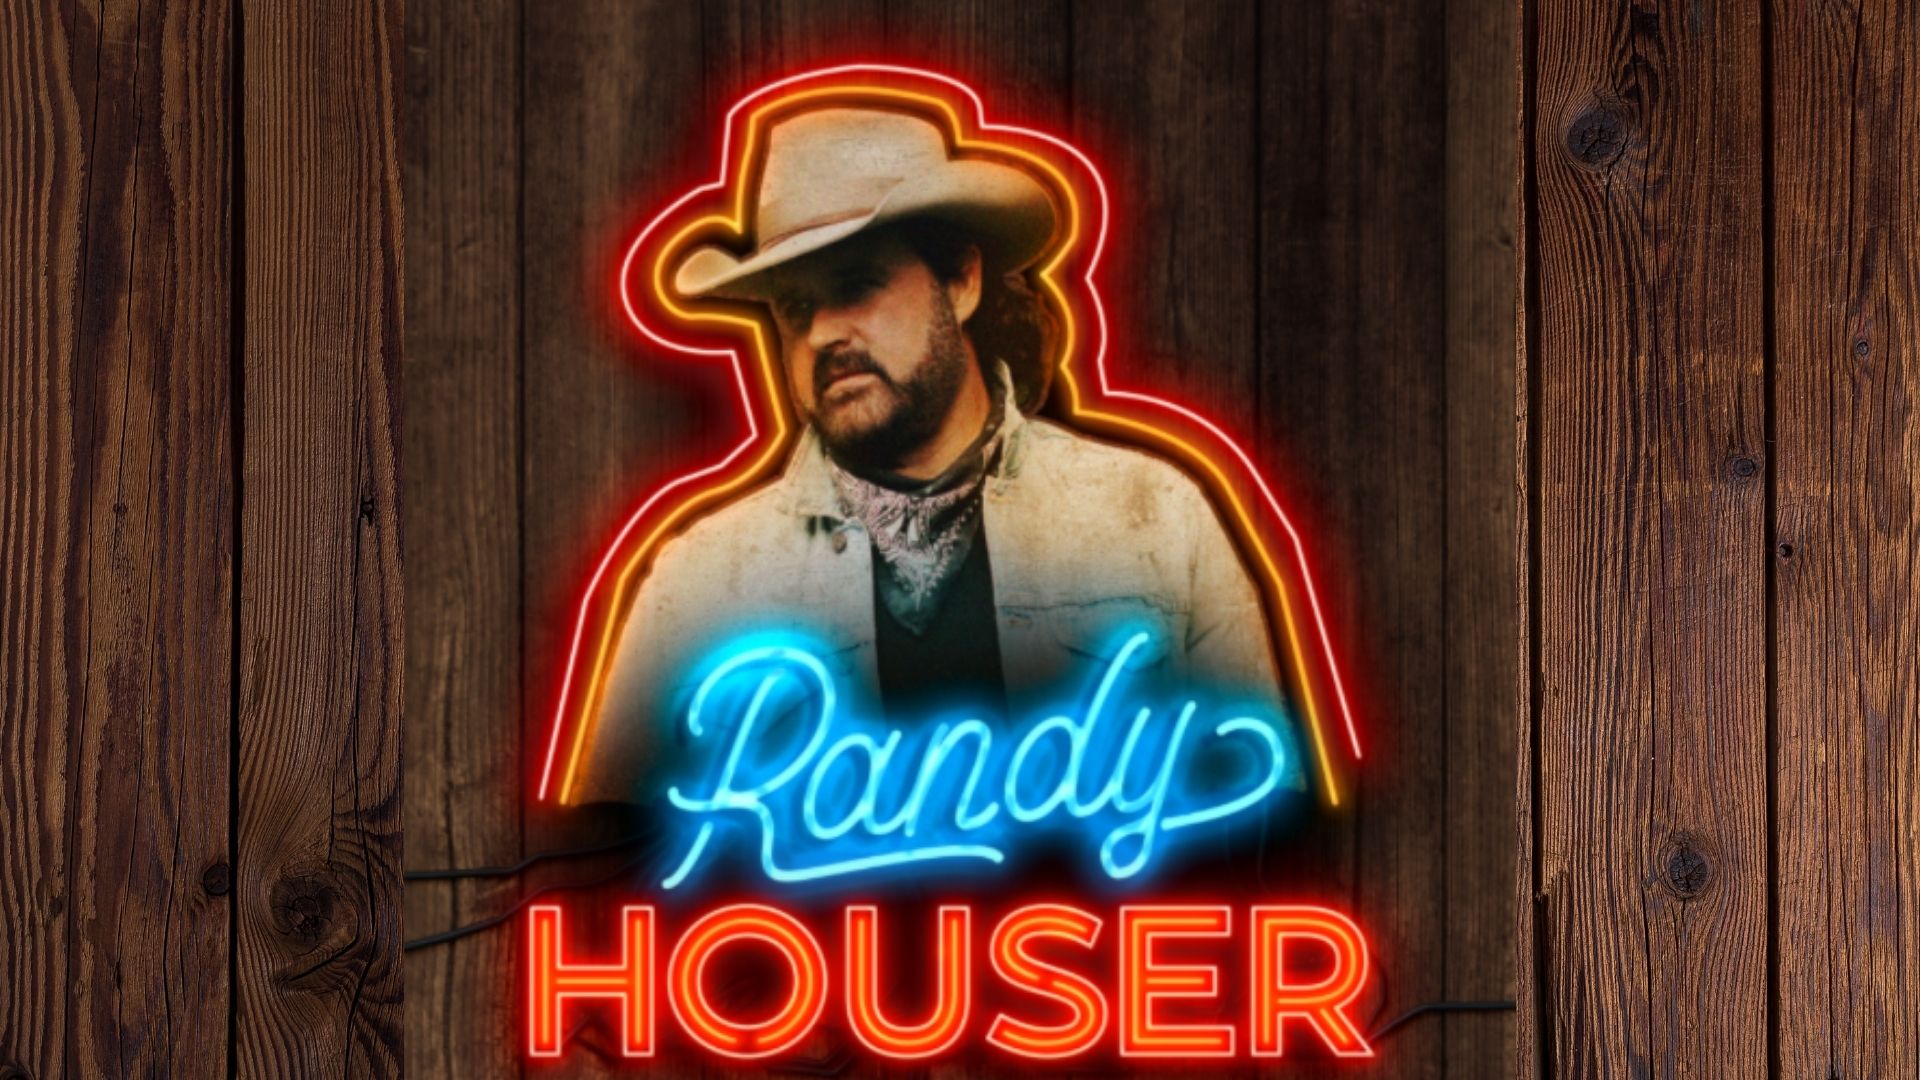 Randy Houser